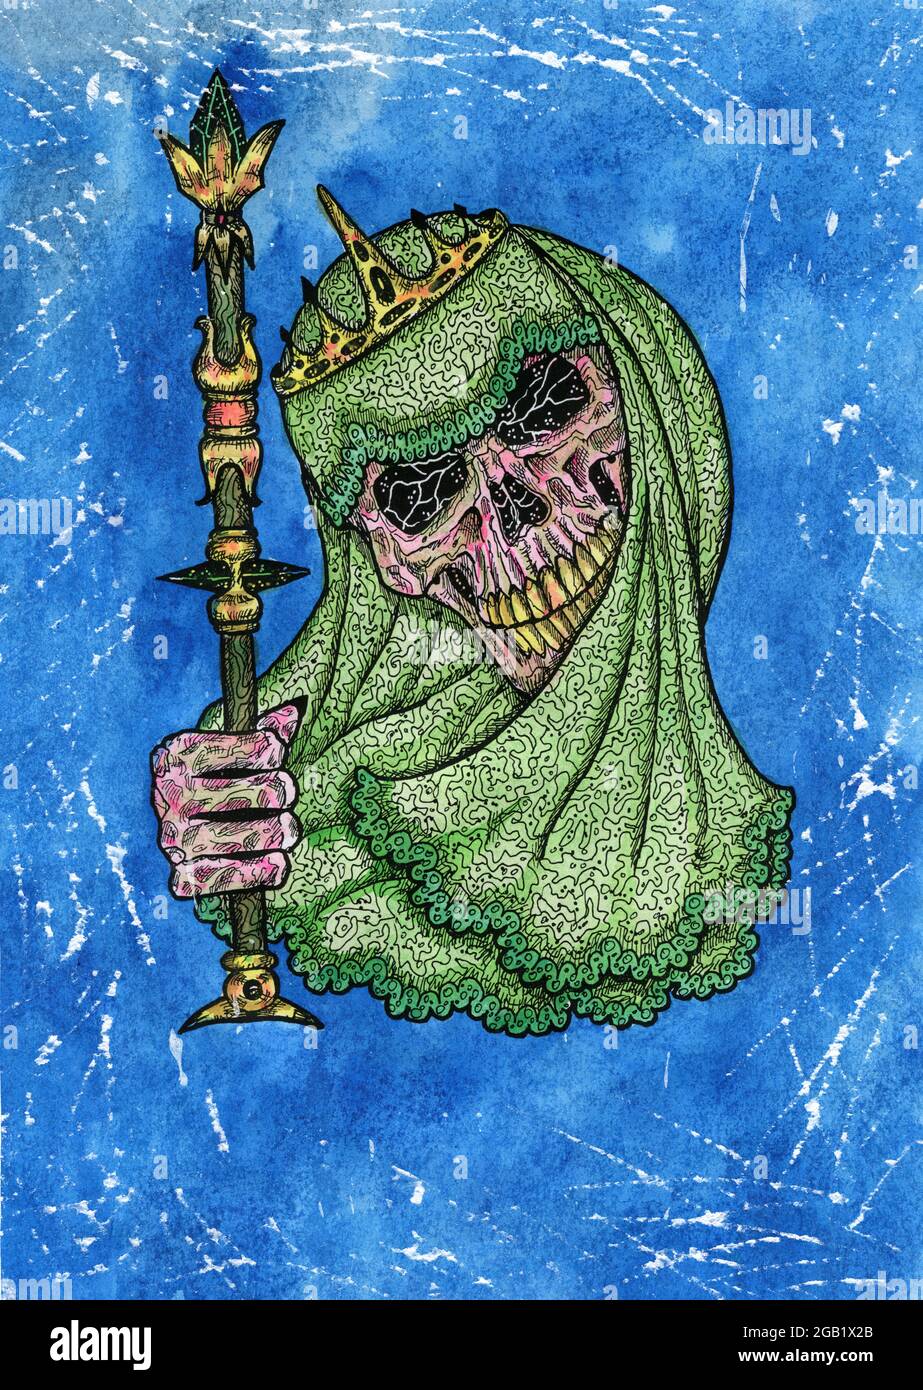 Grunge Aquarell Illustration von gruseligen Schädel als Königin mit Krone hält Zauberstab. Mystische Zeichnung für Halloween mit esoterischer, gotischer, okkulter Co Stockfoto